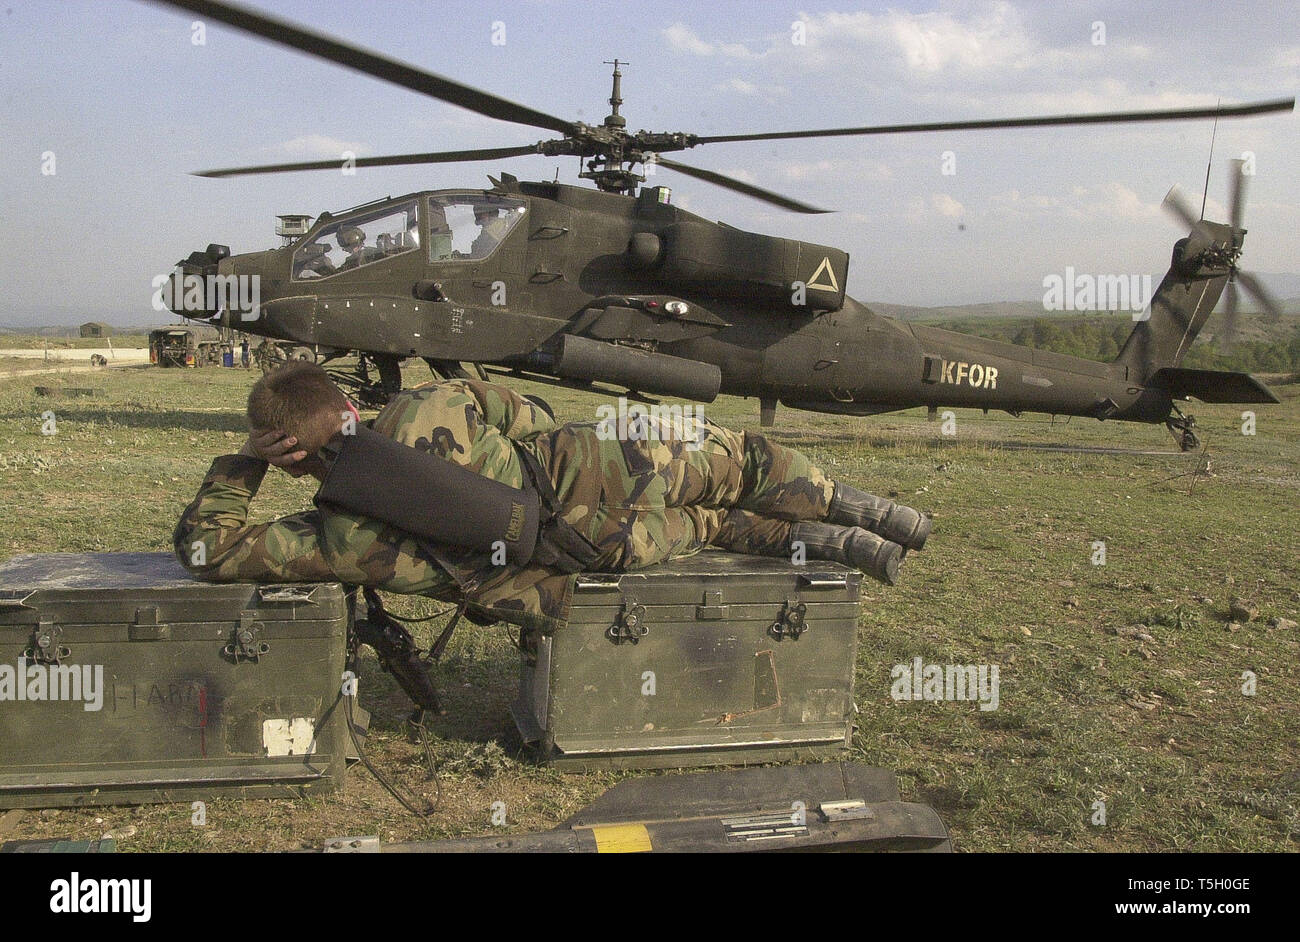 Oktober 16, 2008 - Mazedonien - ein amerikanischer Soldat Uhren ein AH-64 Apache Helikopter Aufwärmen für Sie an einer Luftfahrt schießwesen in Mazedonien am 24. April 2000 erfolgen. (Bild: © Bill Putnam/ZUMA Draht) Stockfoto